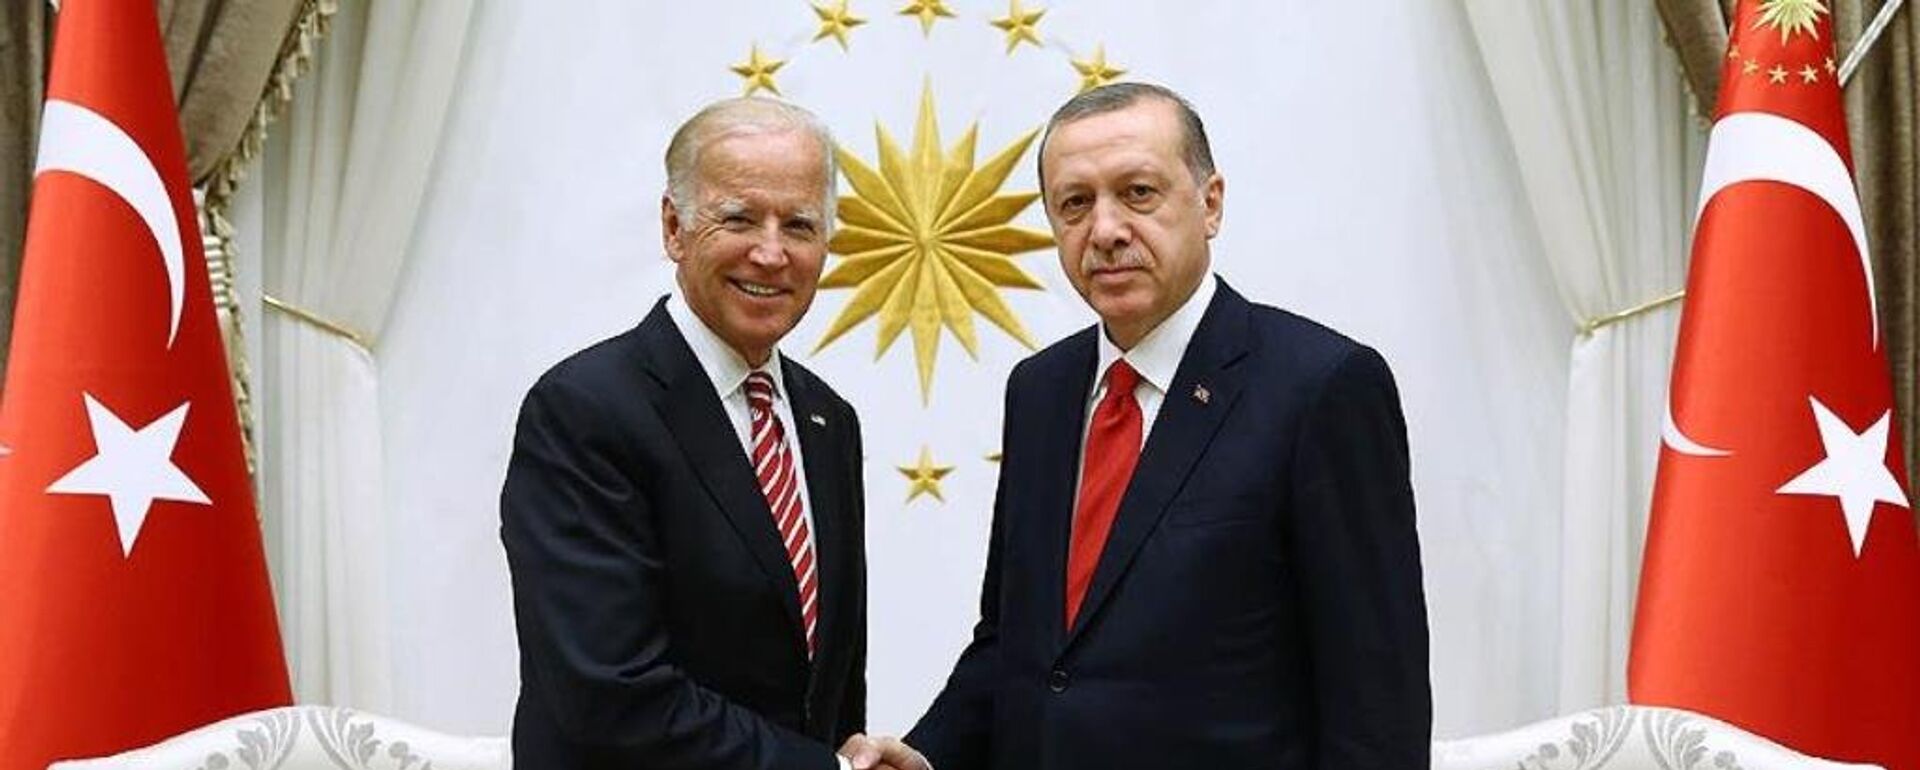 Joe Biden ve Recep Tayyip Erdoğan - Sputnik Türkiye, 1920, 05.06.2021